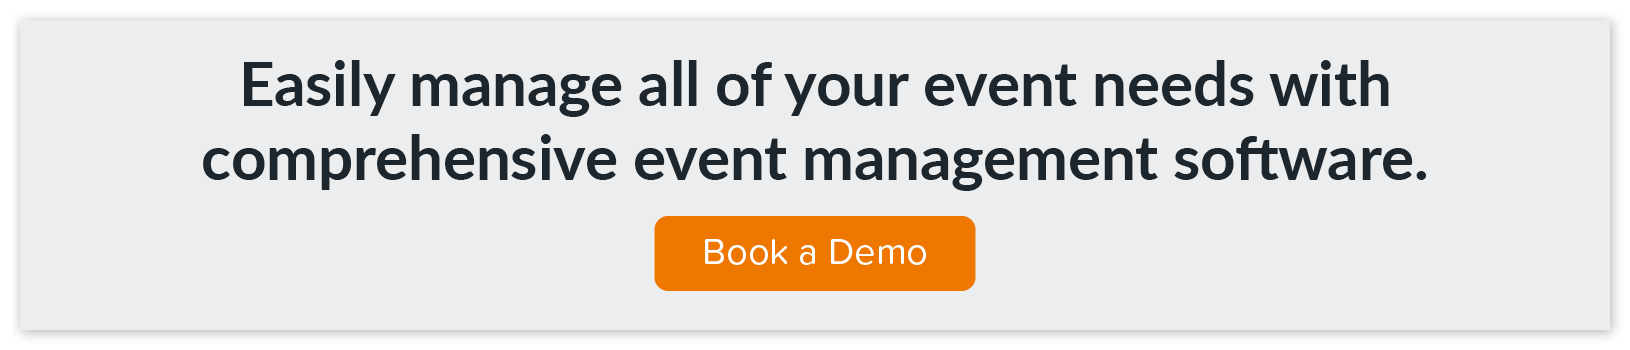 Click through to book a demo of EventMobi’s comprehensive event management software.